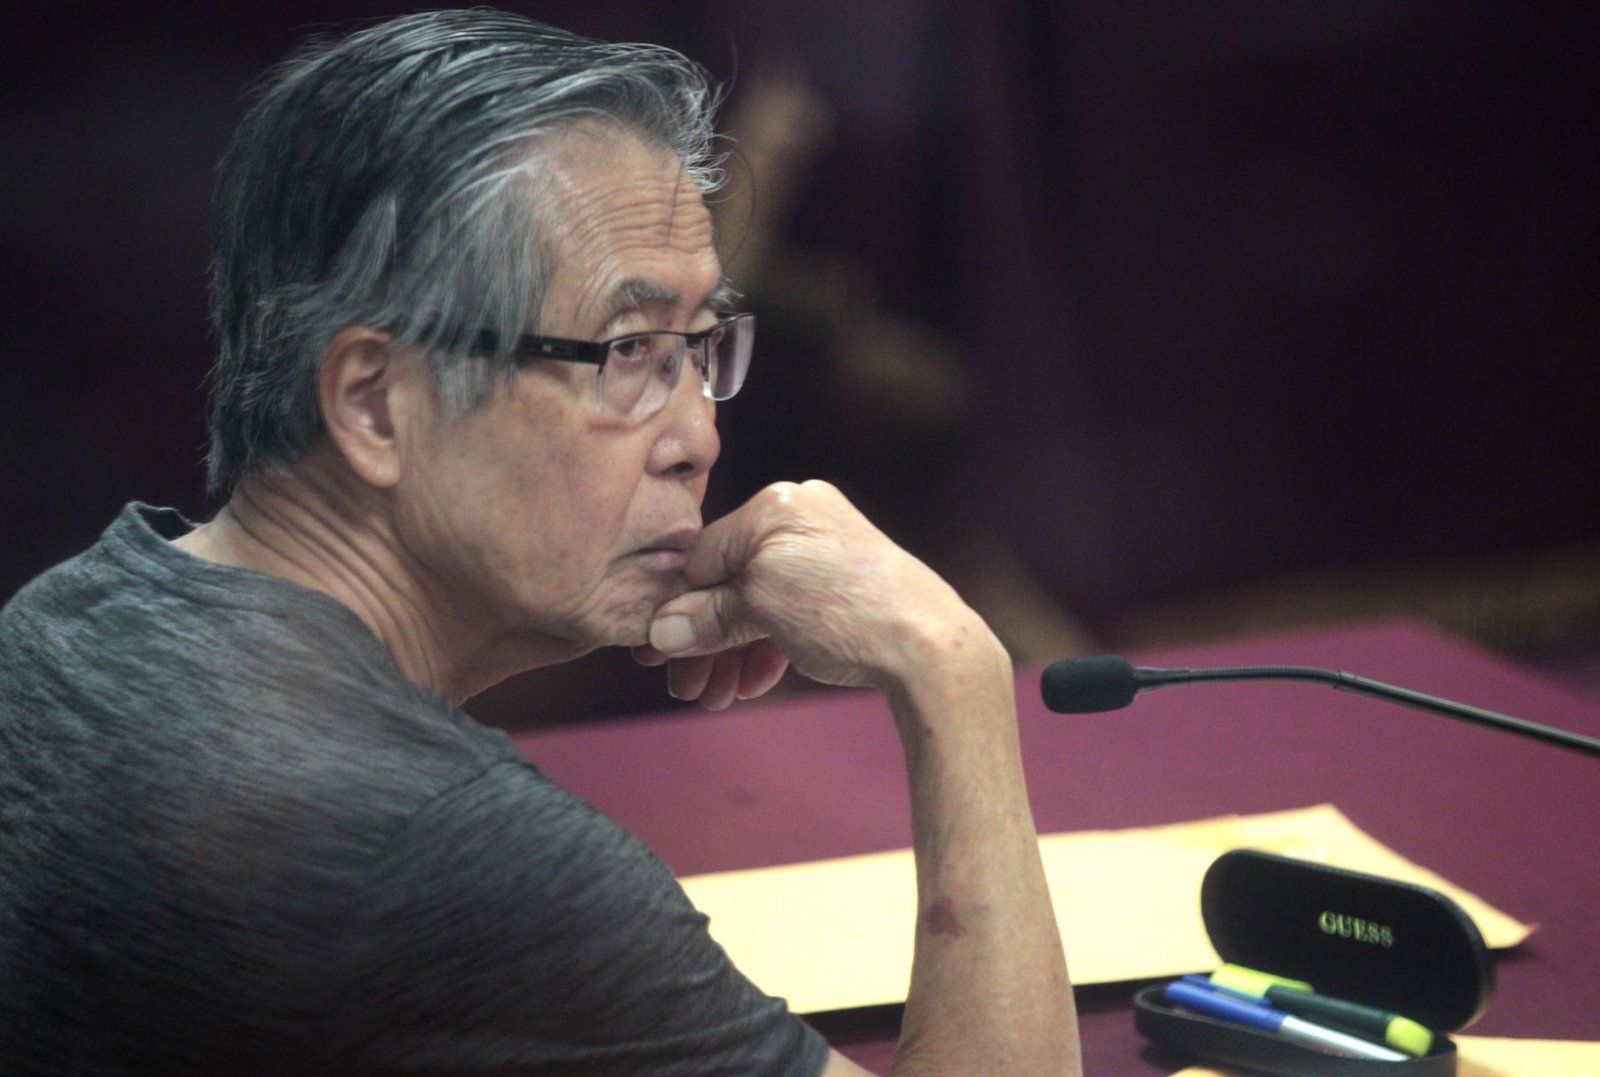 Con voto dirimente del presidente del Tribunal Constitucional hicieron mayoría para conceder indulto a Alberto Fujimori